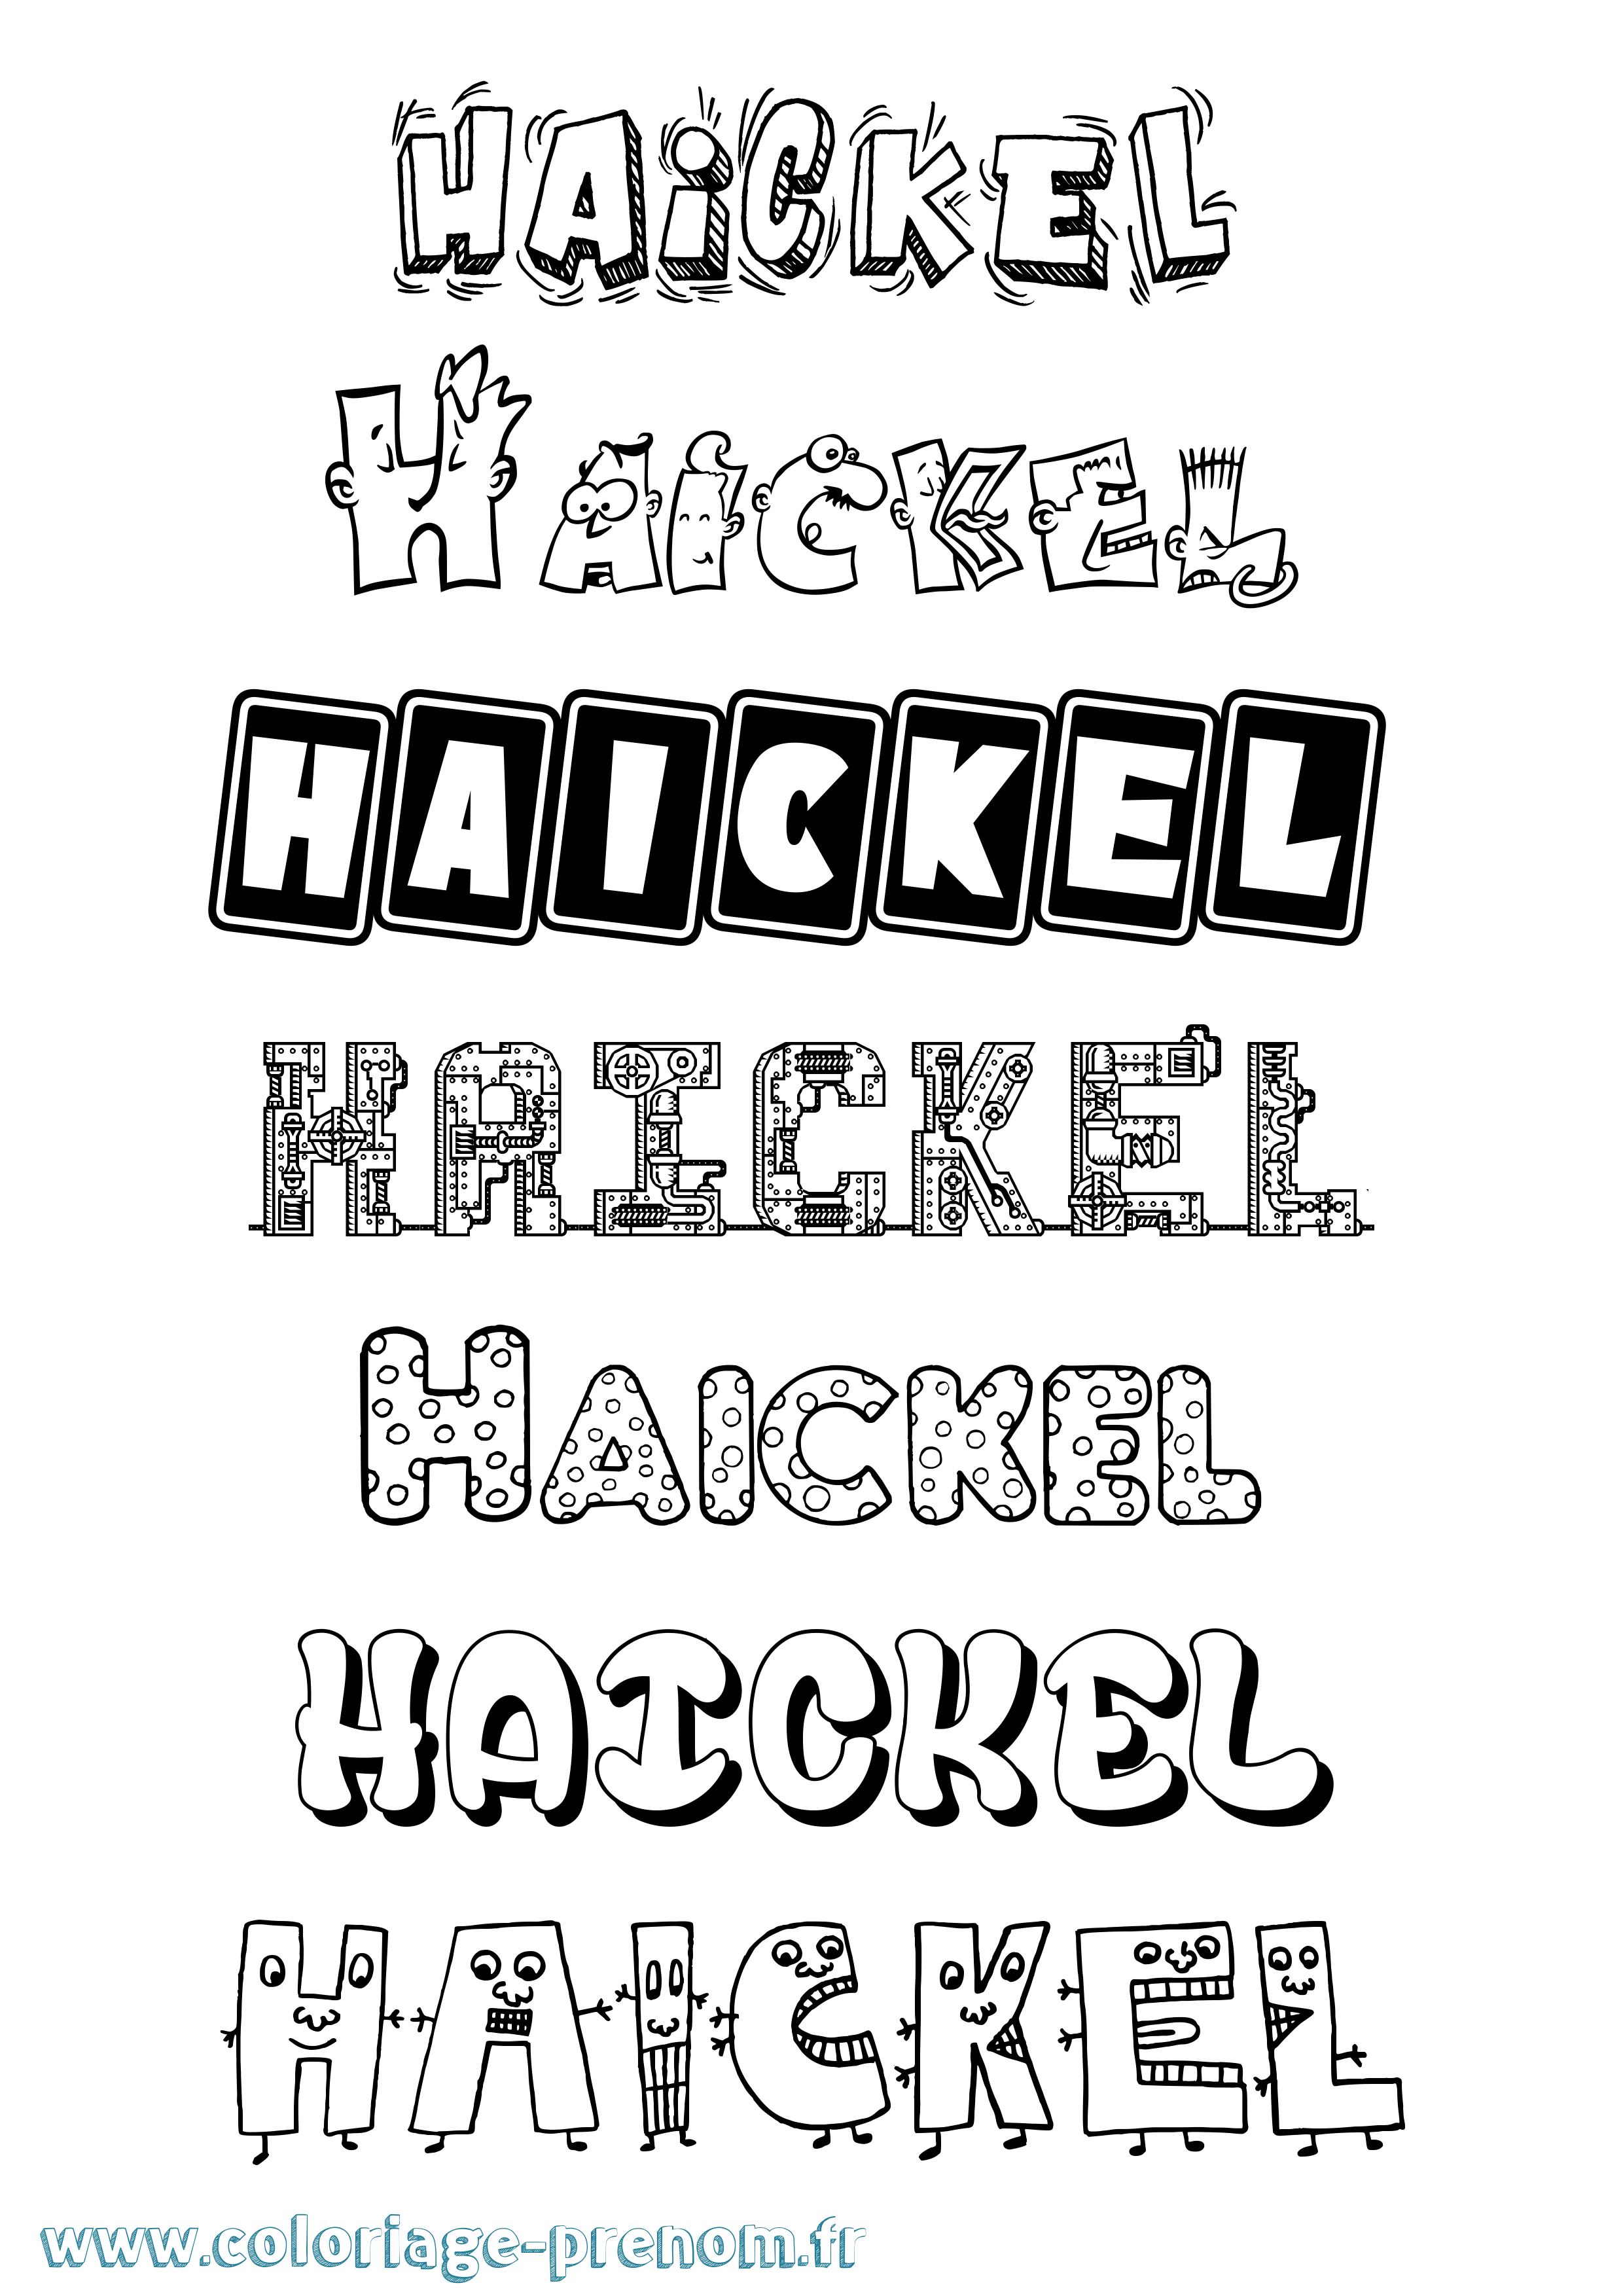 Coloriage prénom Haickel Fun